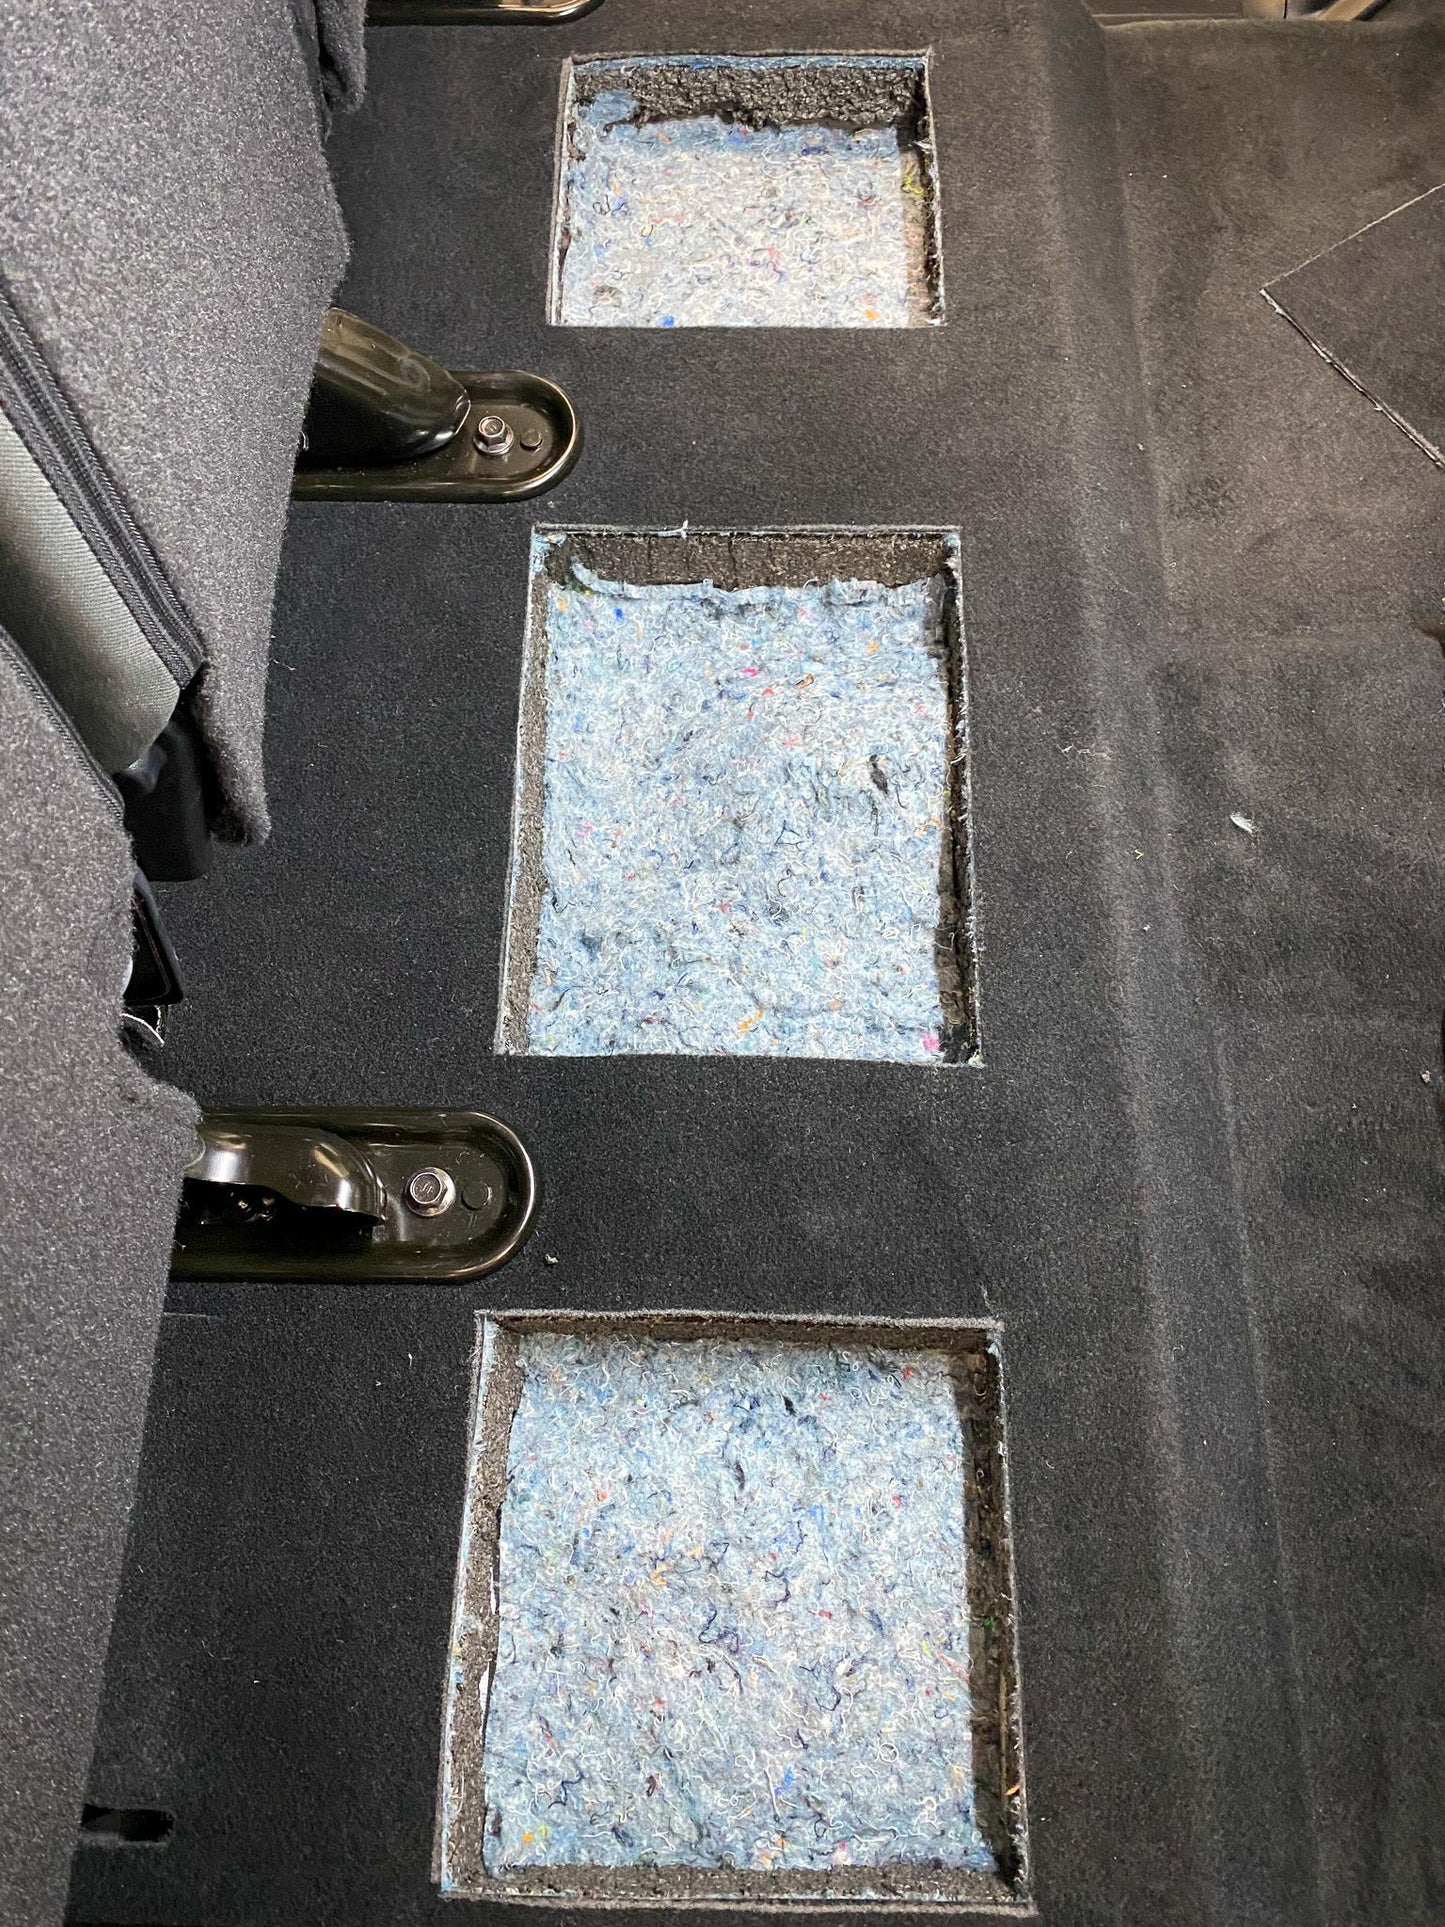 Tundra CrewMax Plastic Rear Under Seat Storage | '14 - '21 Tundra